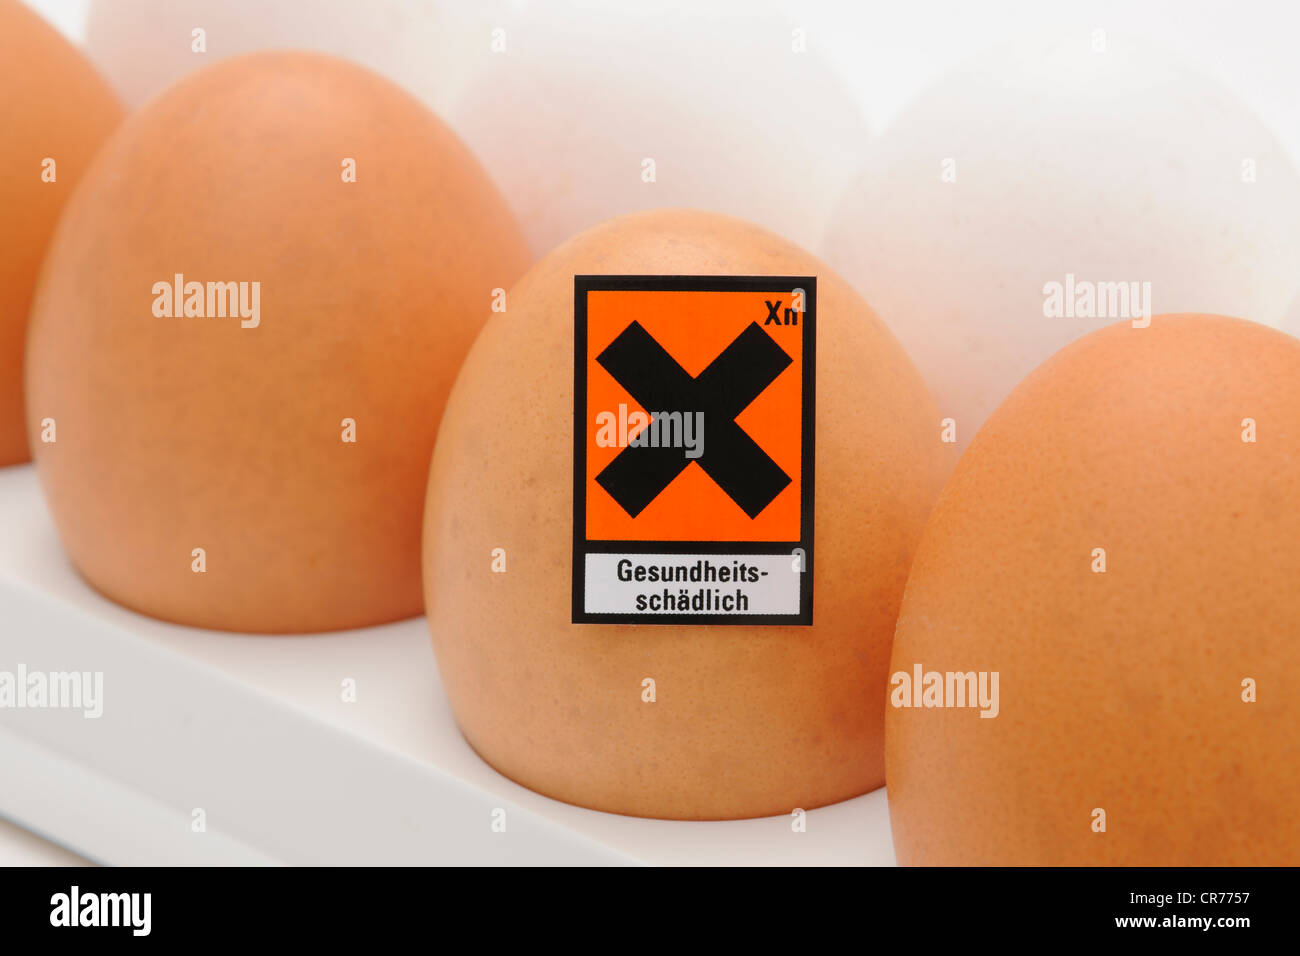 Uova di gallina con simbolo di pericolo "Gesundheitsschaedlich', tedesco per "nocivo per la salute', immagine simbolica per la contaminazione di uova Foto Stock